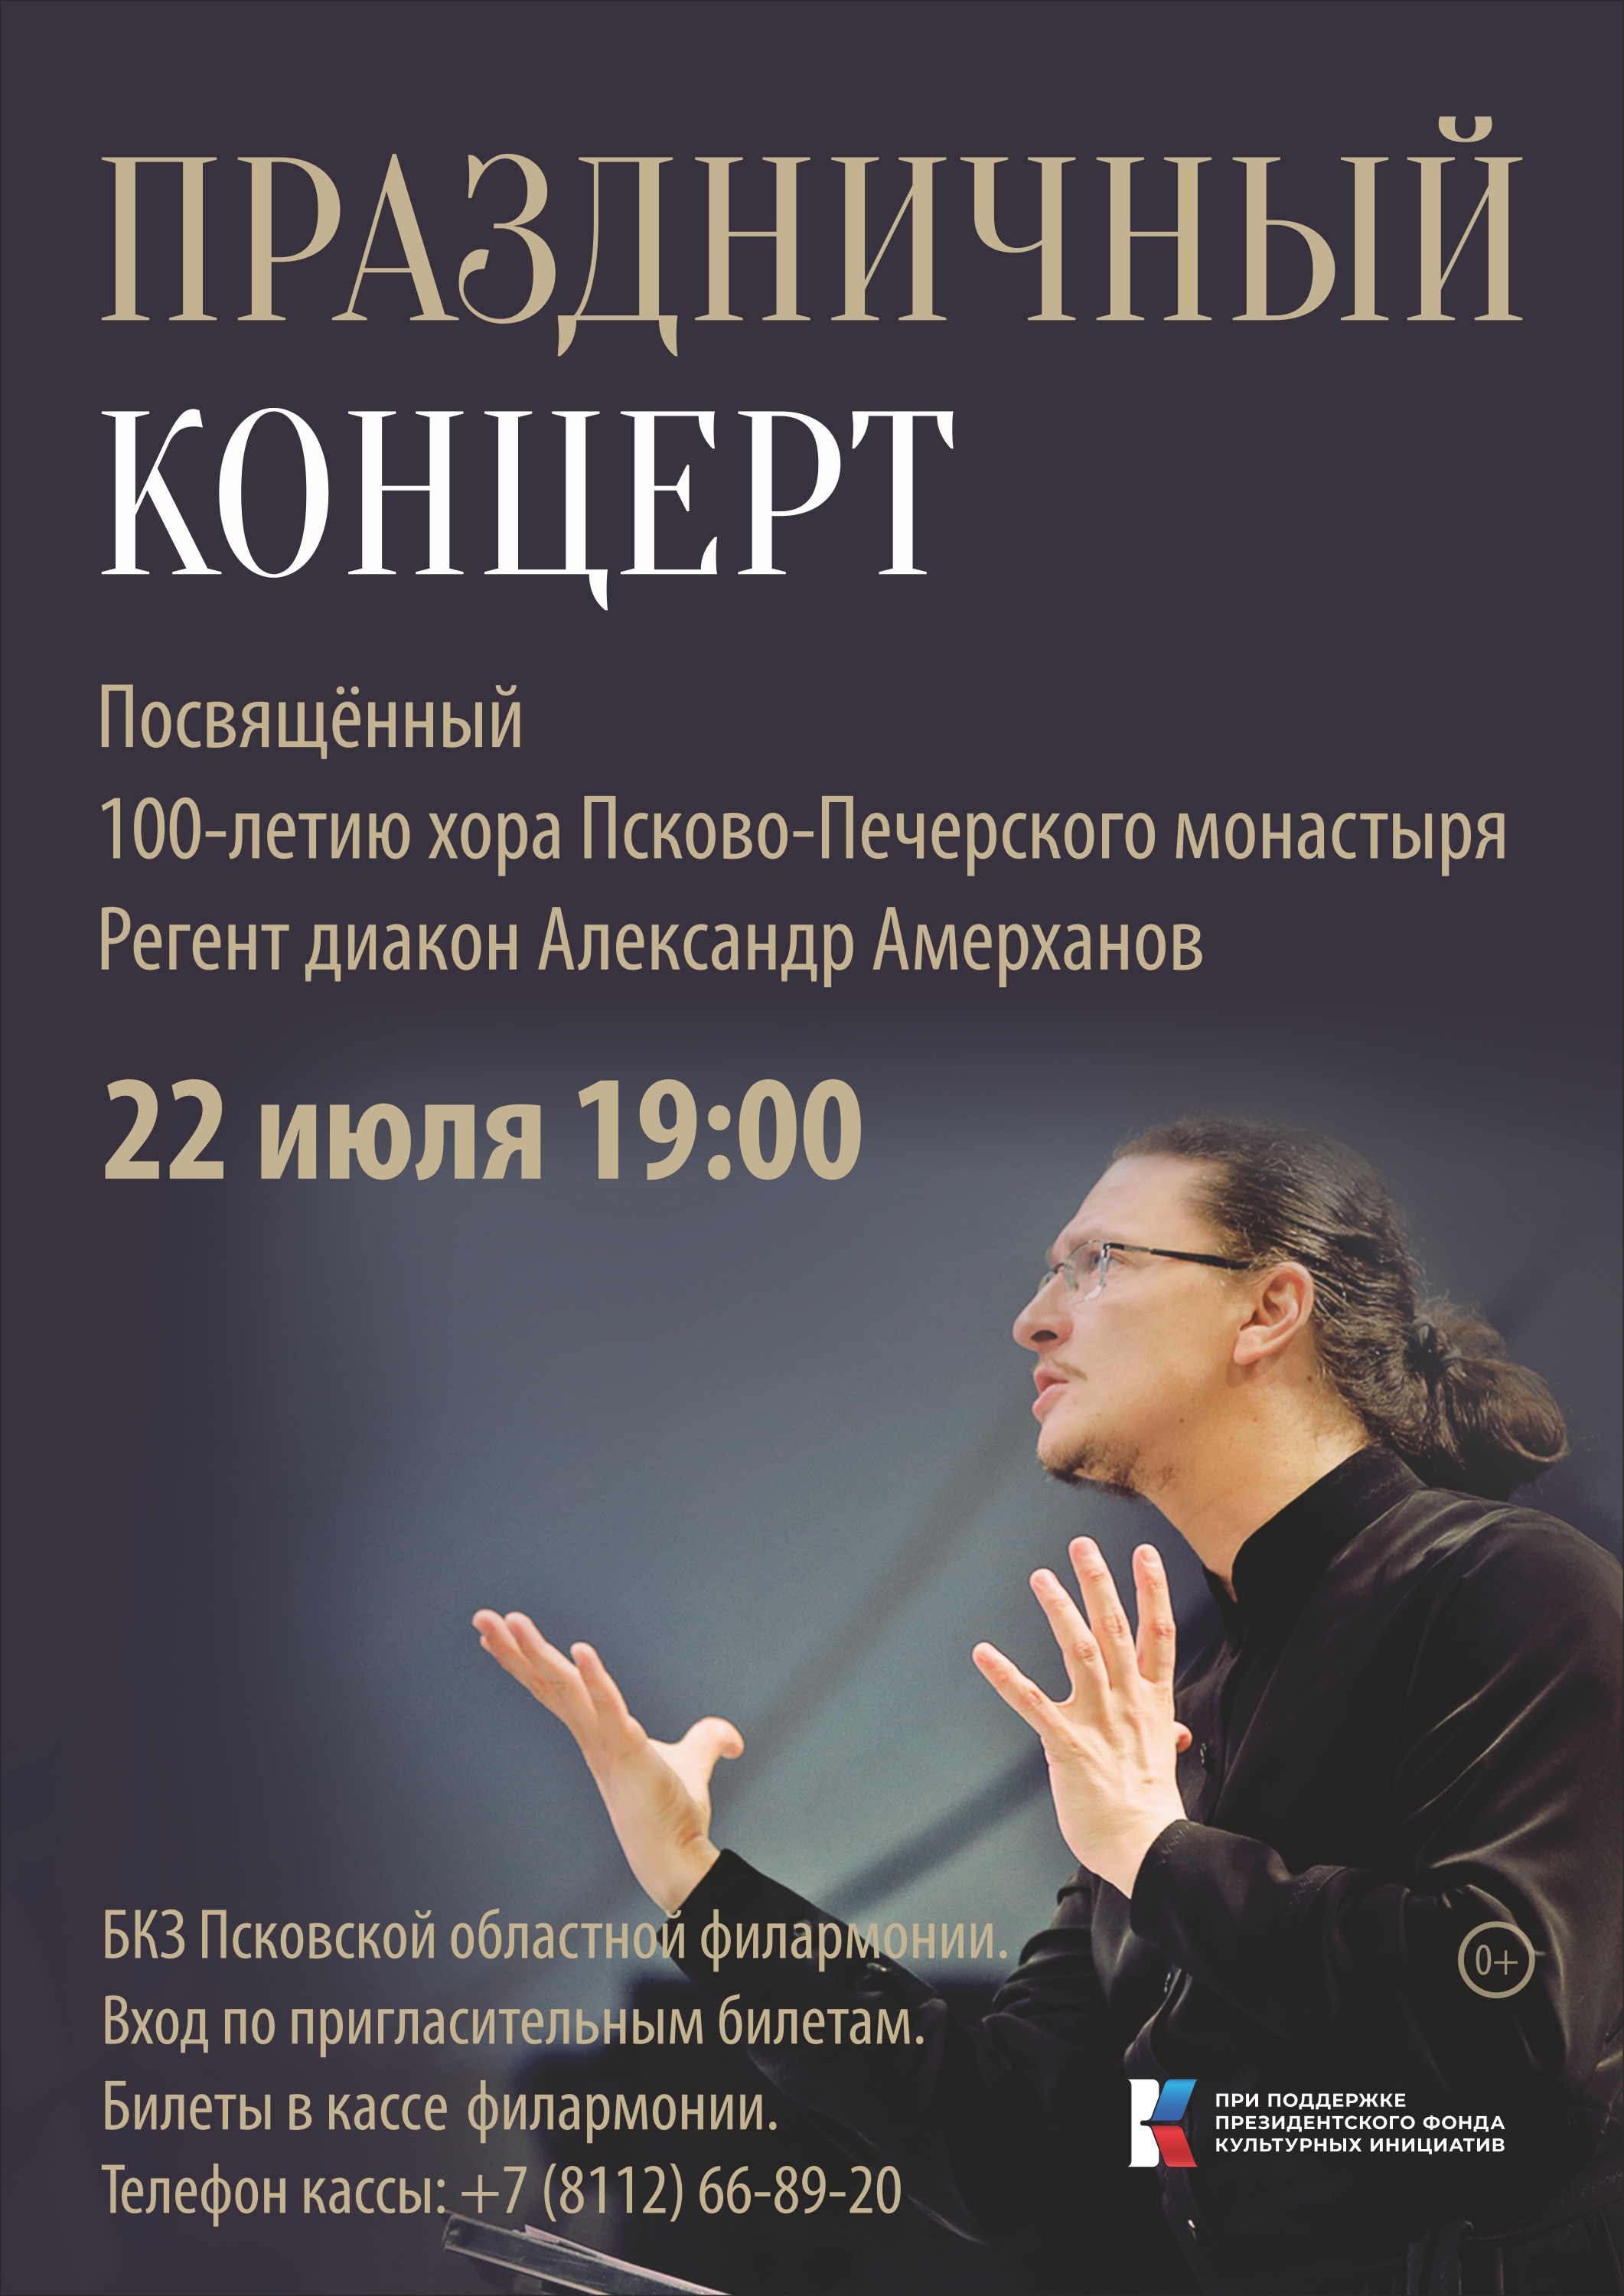 Праздничный концерт Архиерейского хора Псково-Печерского монастыря